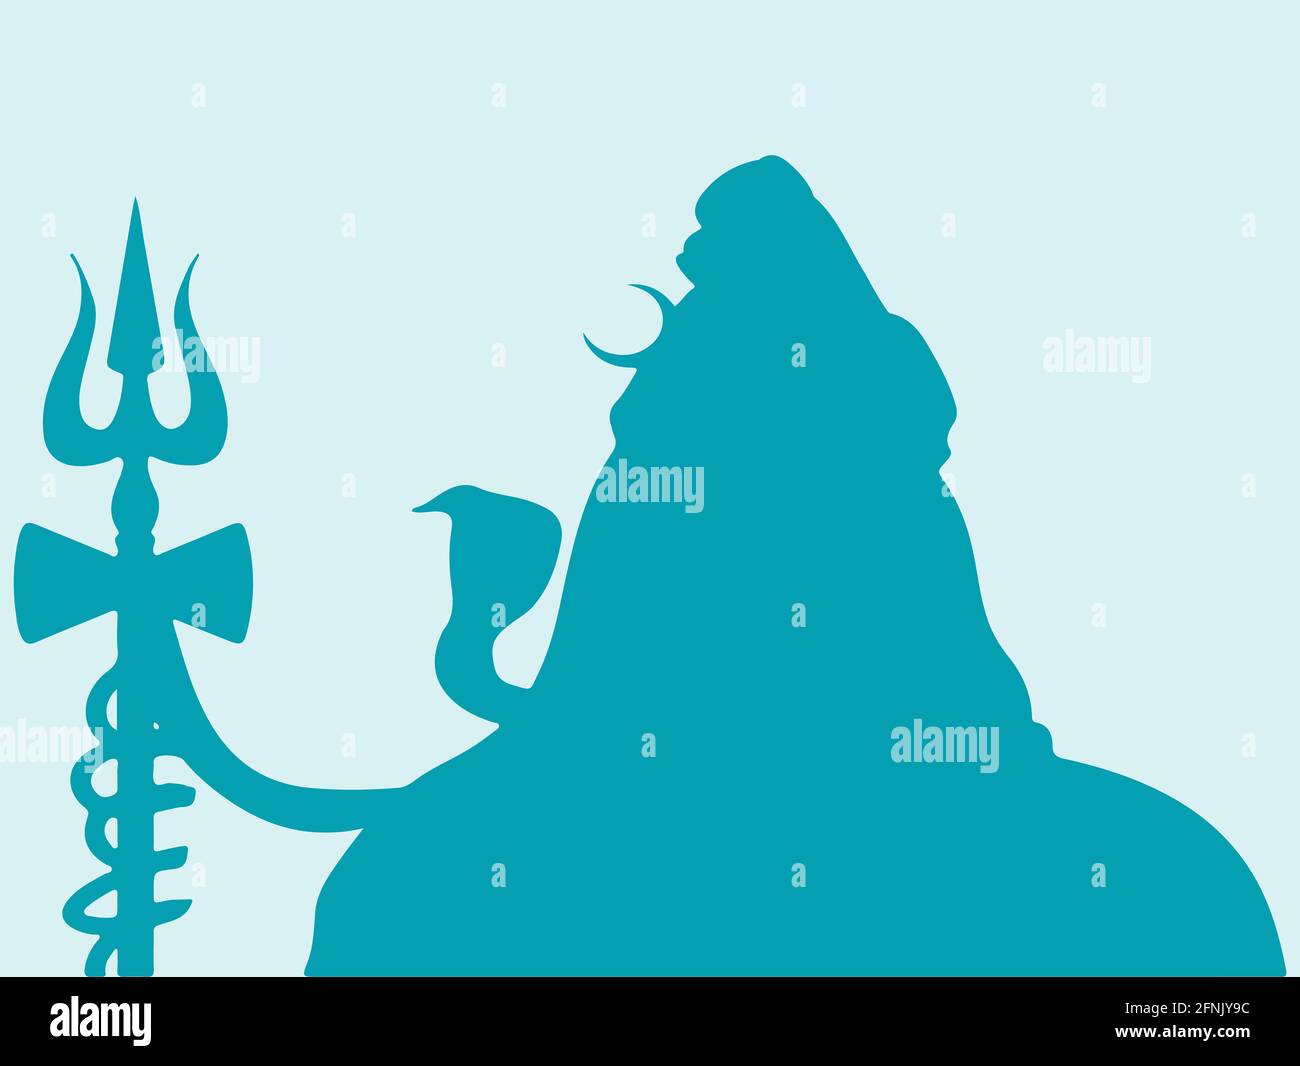 Illustrazione di un disegno del famoso e potente dio indiano Lord Shiva silhouette Foto Stock